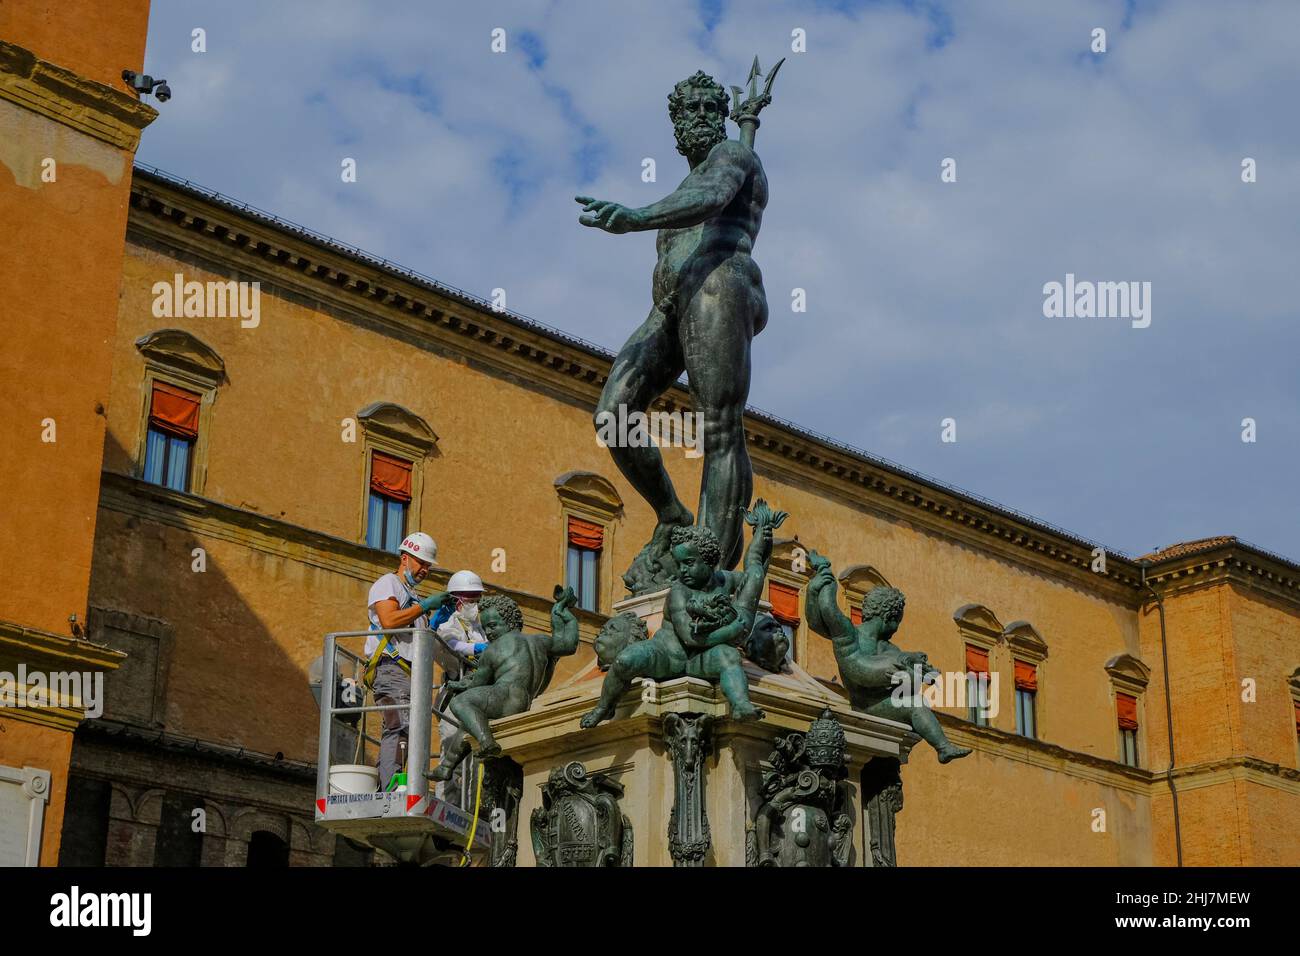 Octobre 2021 Bologne, Italie: Ouvriers nettoyant la fontaine Neptune à travers les bâtiments de la place, piazza Maggiore Banque D'Images